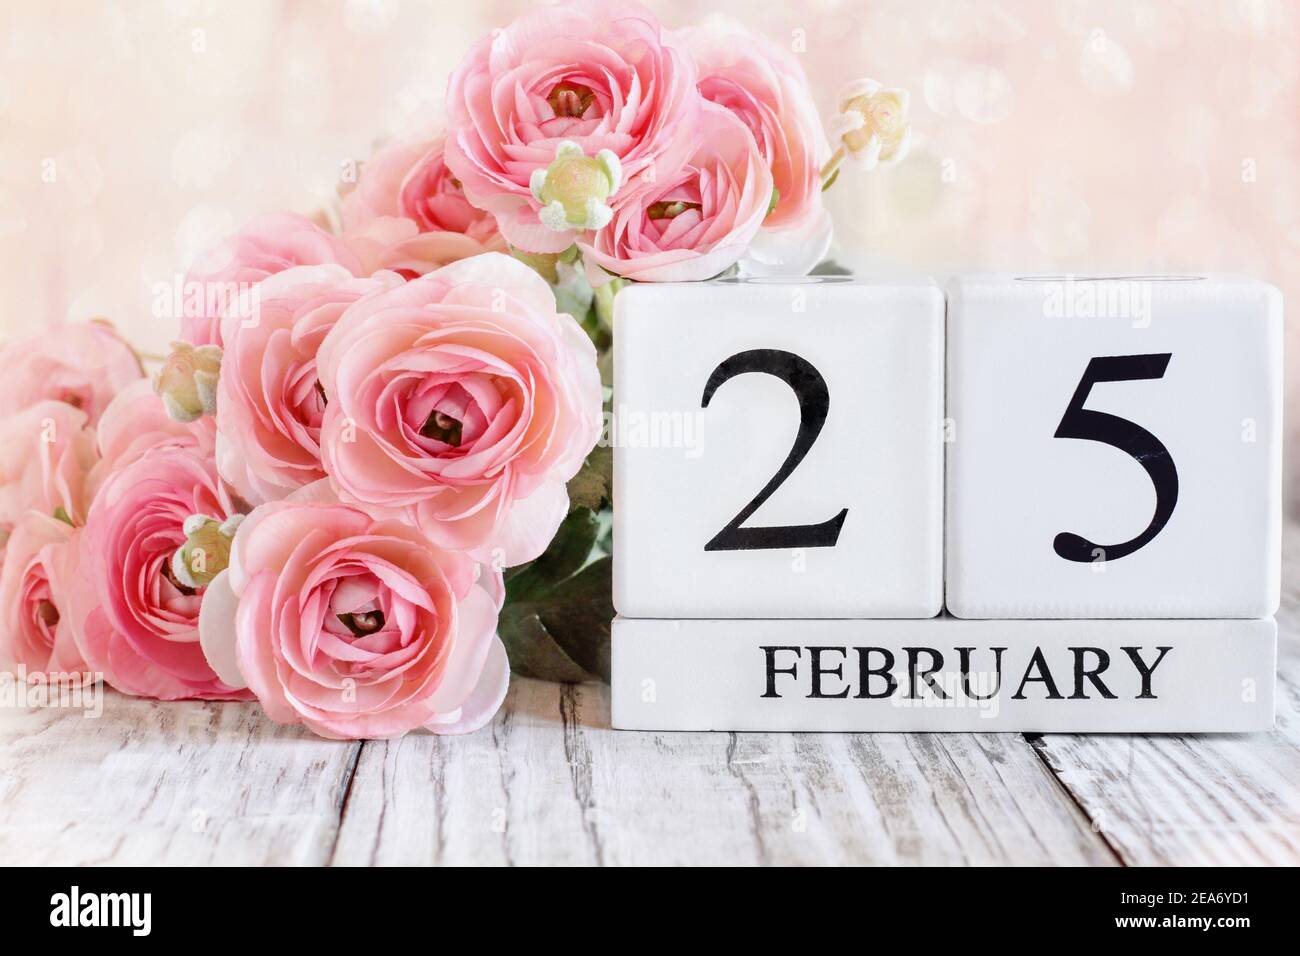 Blocs de calendrier en bois blanc avec la date du 25 février. Foyer sélectif avec ranunculus rose en arrière-plan sur une table en bois. Banque D'Images